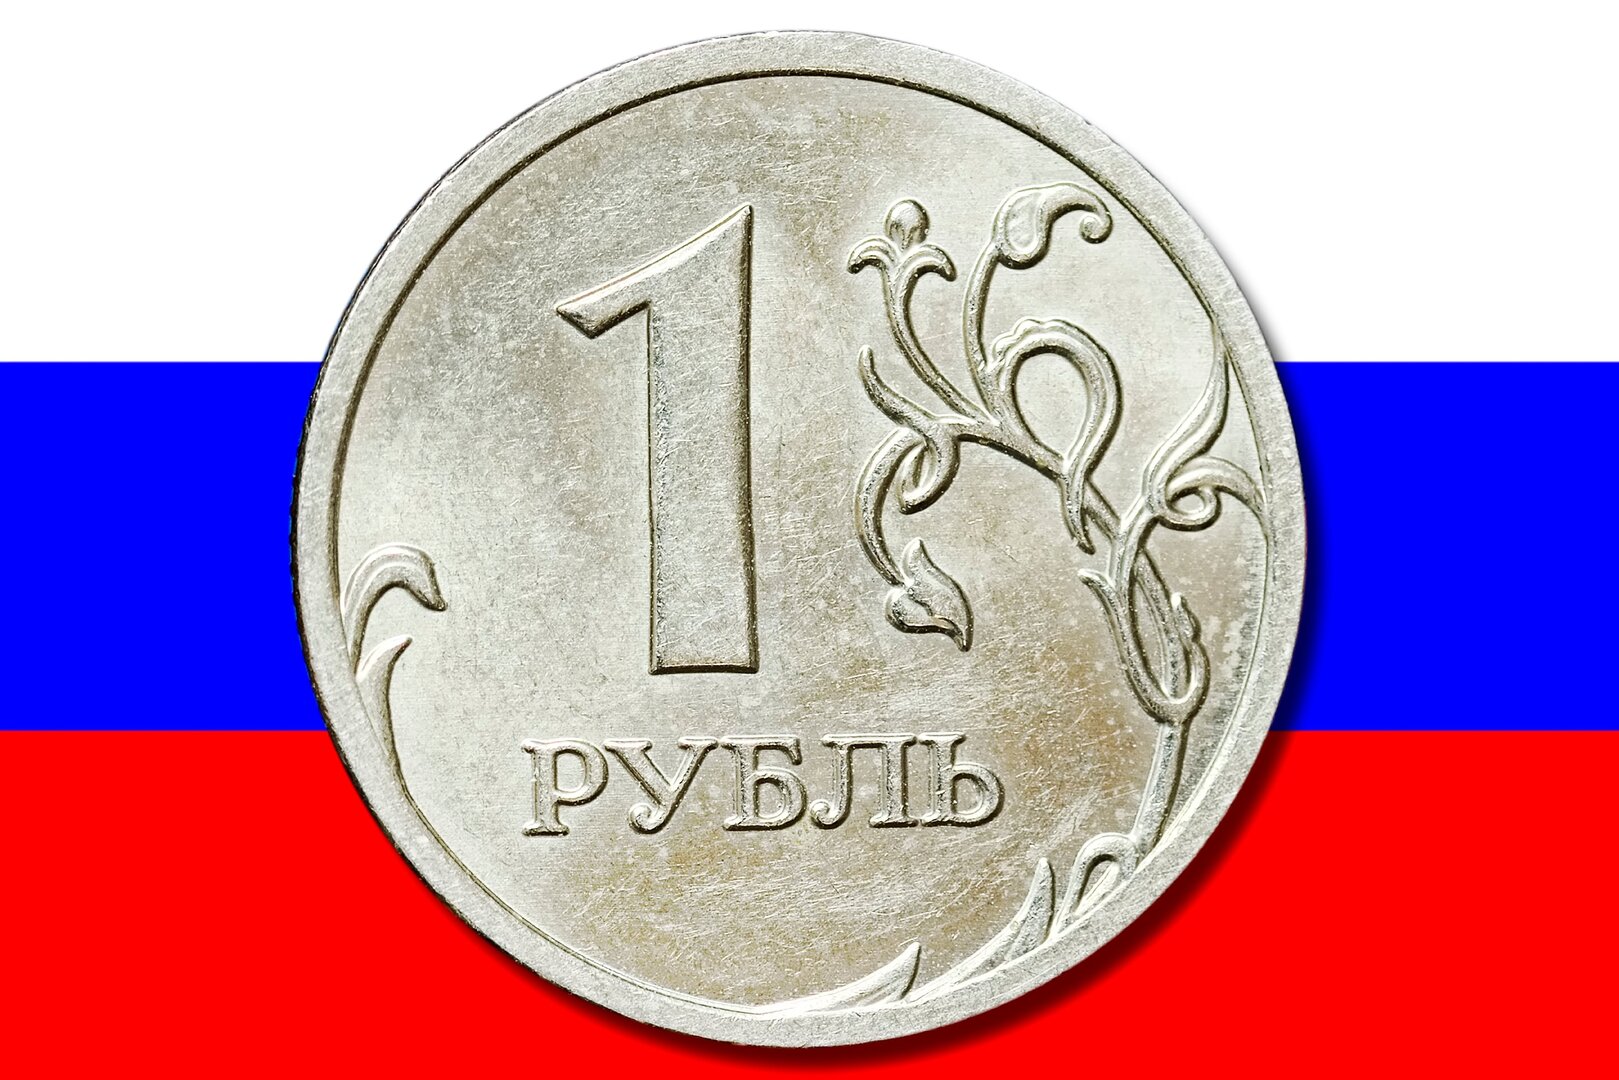 رئيس الحكومة الروسية يتحدث عن فرص فريدة ظهرت في الاقتصاد الروسي